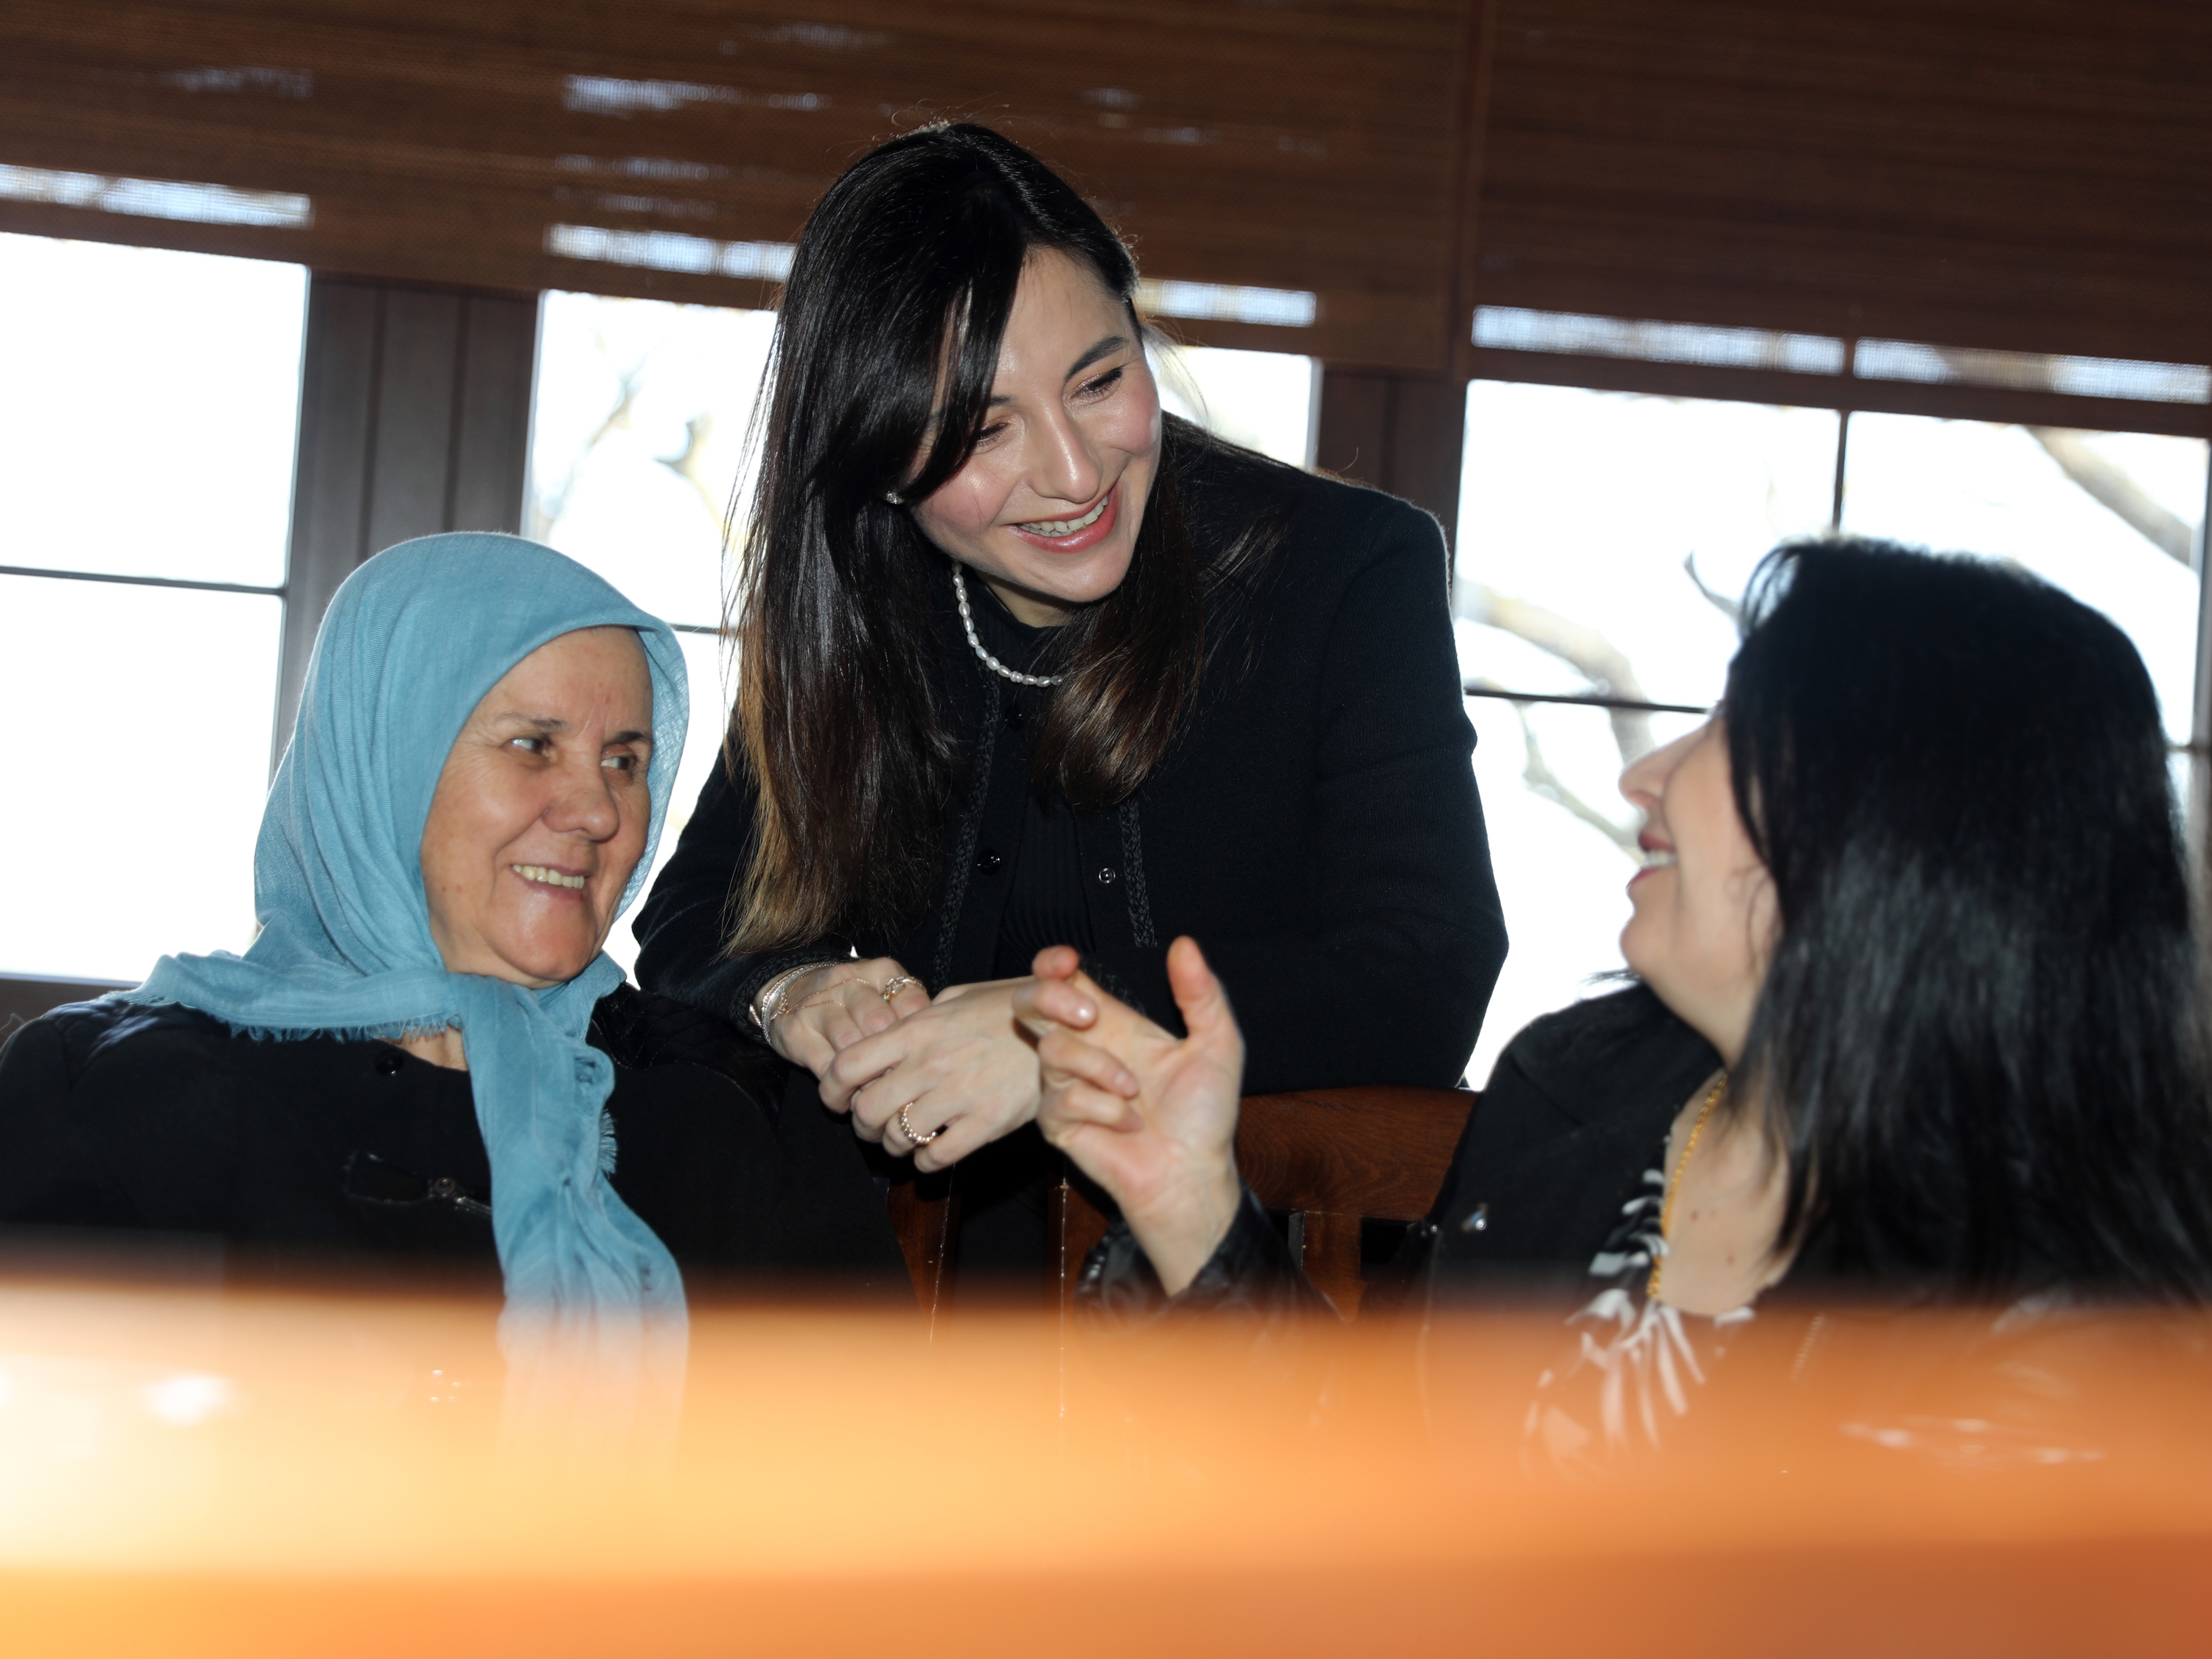 Çerkezköy Belediye Başkanı Vahap Akay’ın eşi Güliz Akay “18 Mart Çanakkale Zaferi ve Şehitleri
Anma Günü” dolayısıyla kentimizde ikamet eden şehit ve gazilerimizin ailelerini düzenlenen kahvaltı
programında ağırladı.